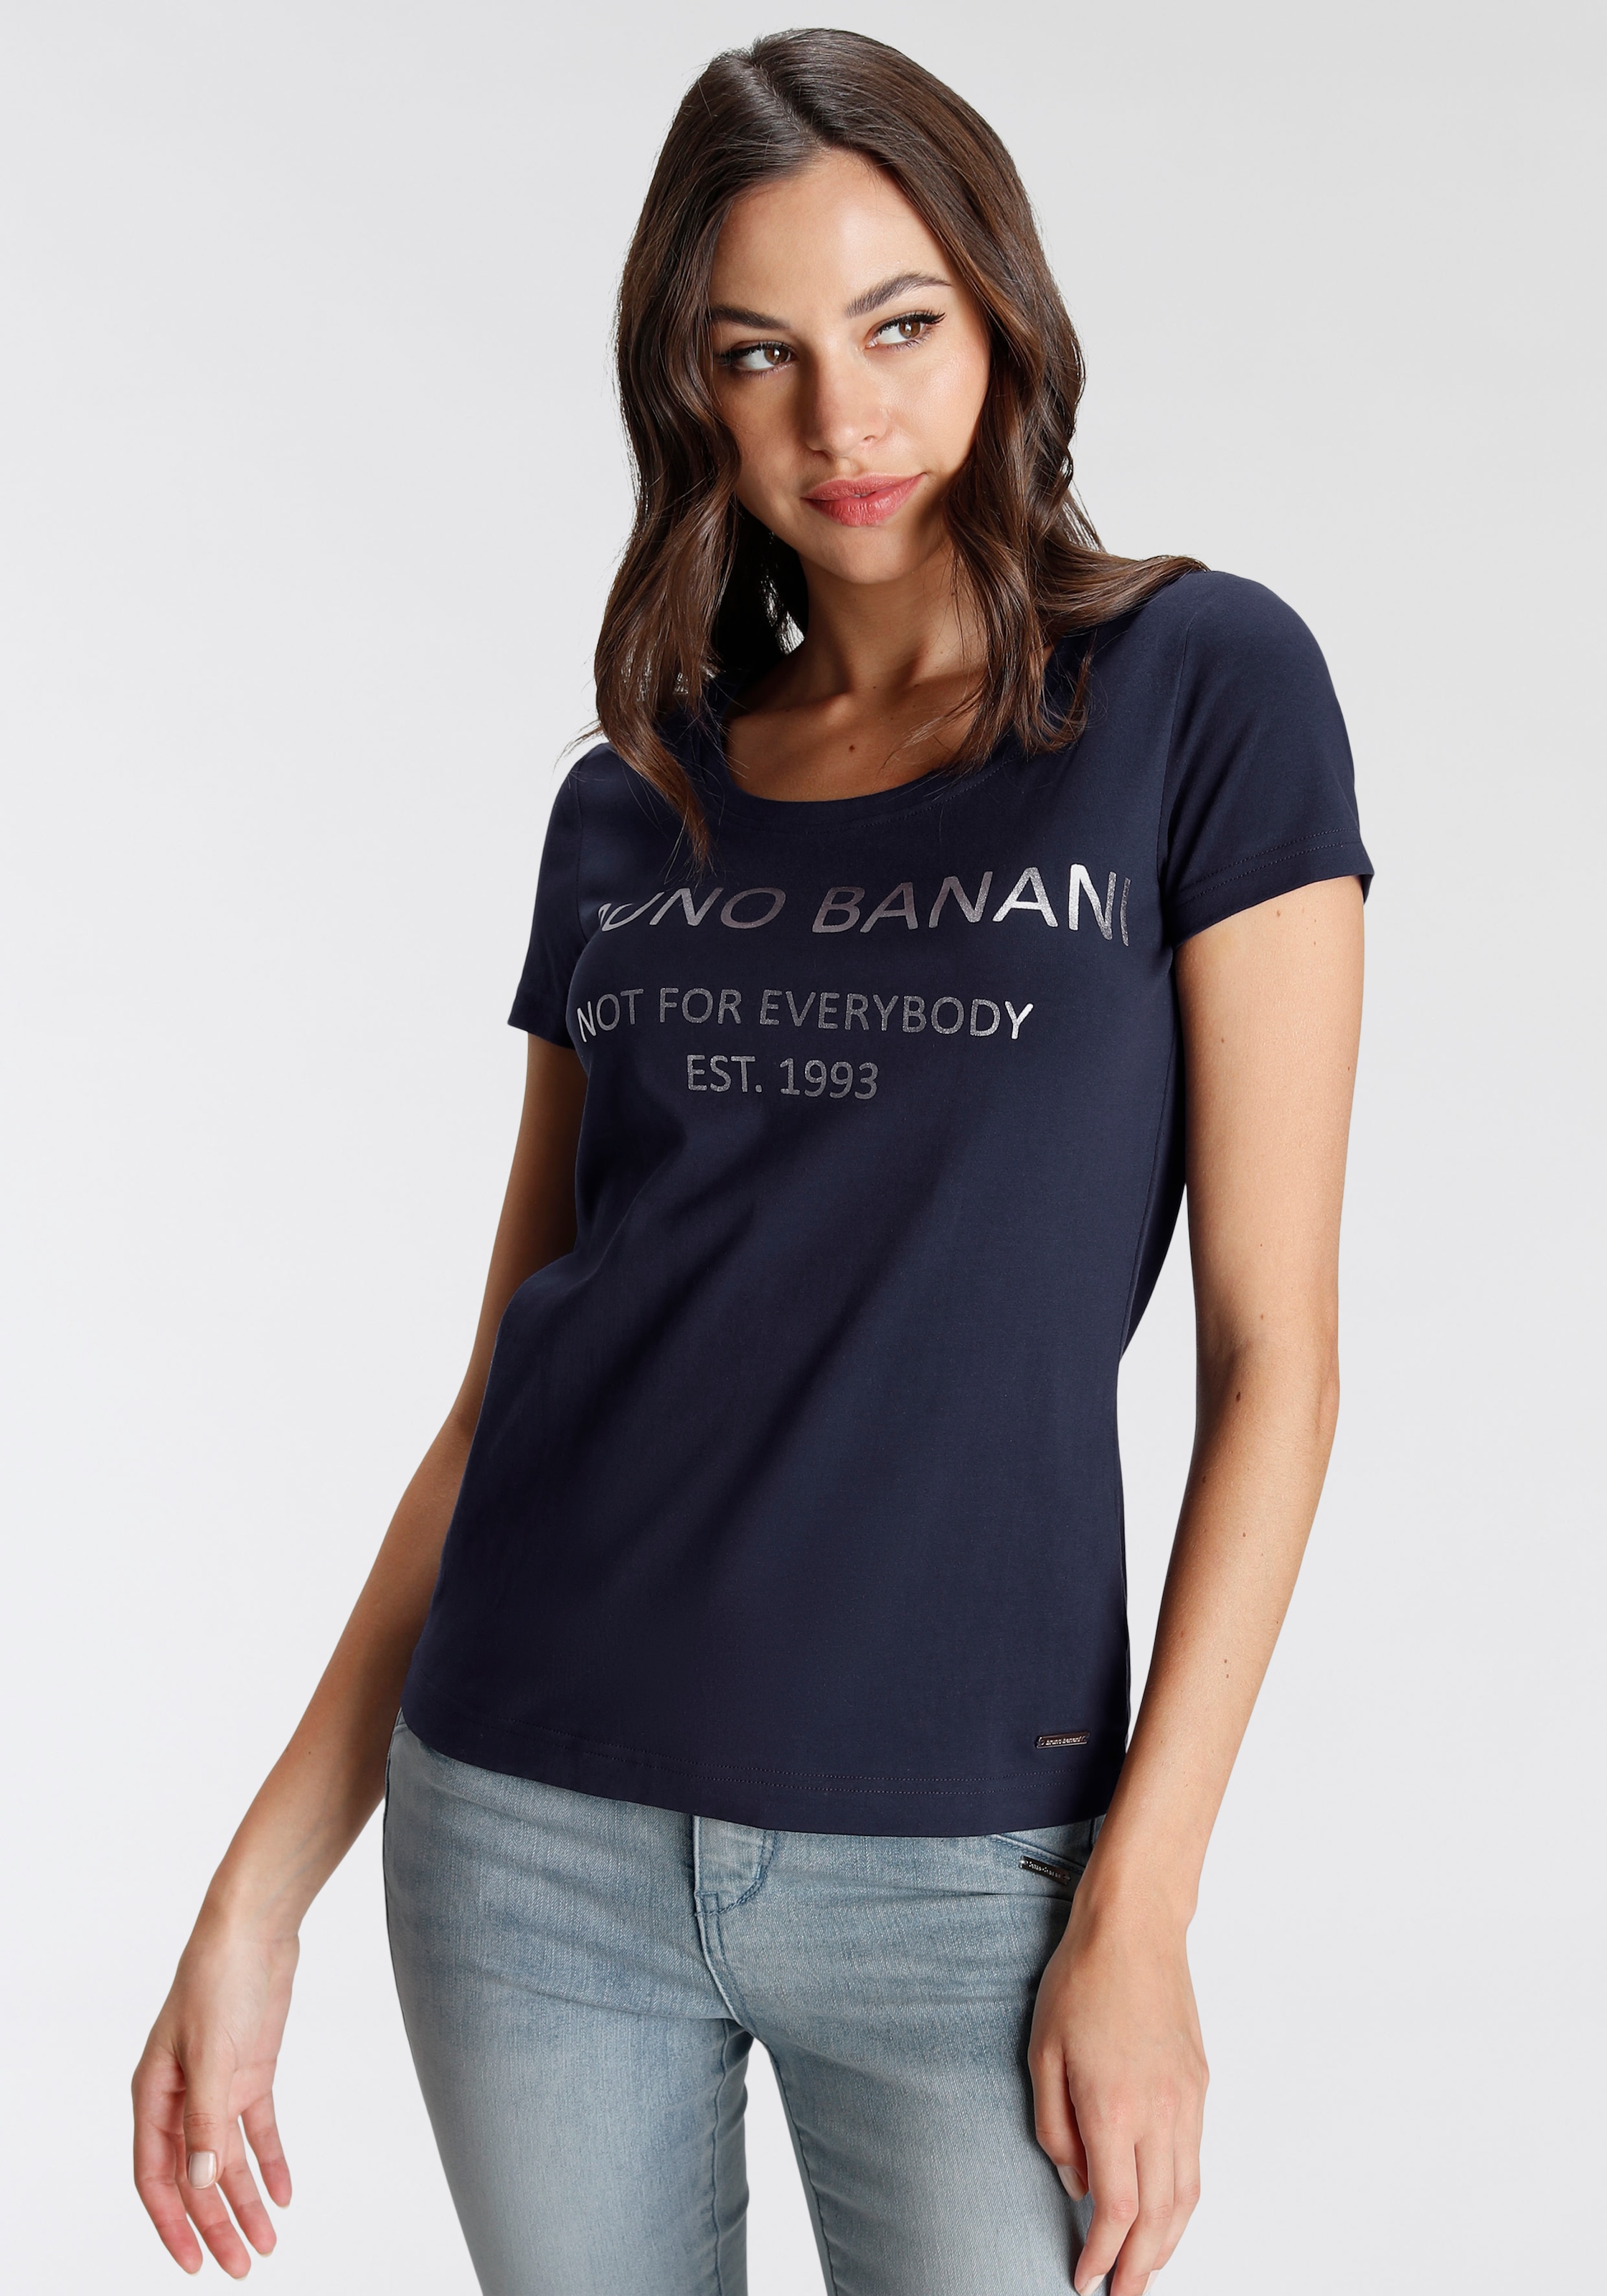 Logodruck OTTO Bruno NEUE KOLLEKTION bei Banani T-Shirt, goldfarbenem mit kaufen online